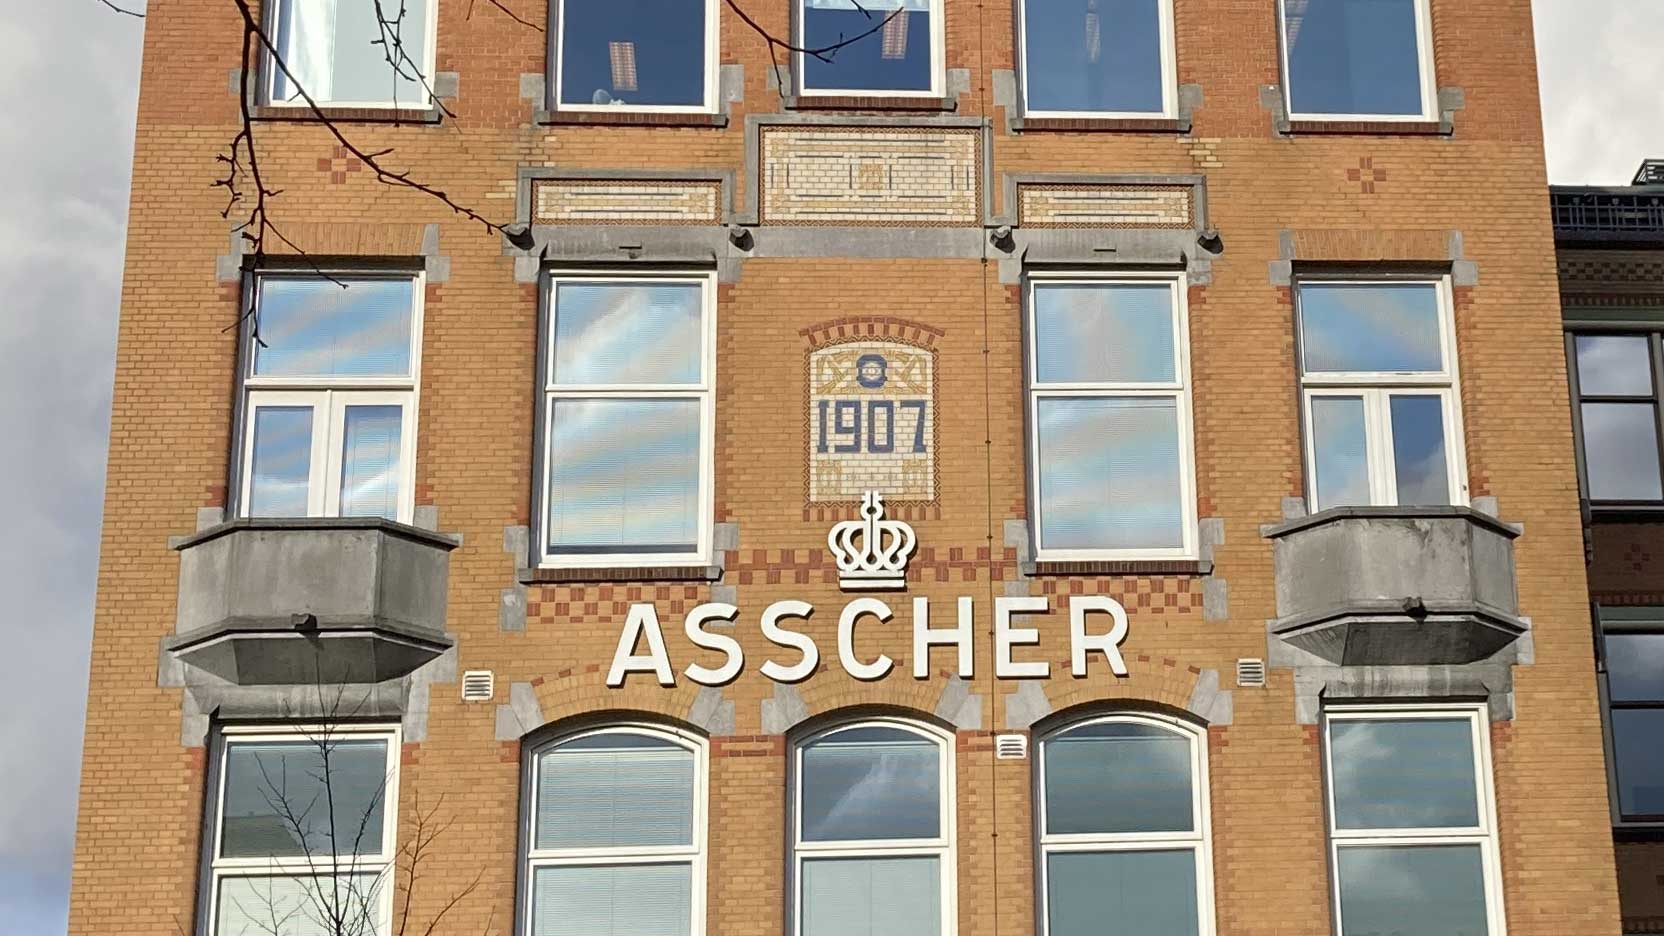 Diamond polishing factory Asscher, Amsterdam